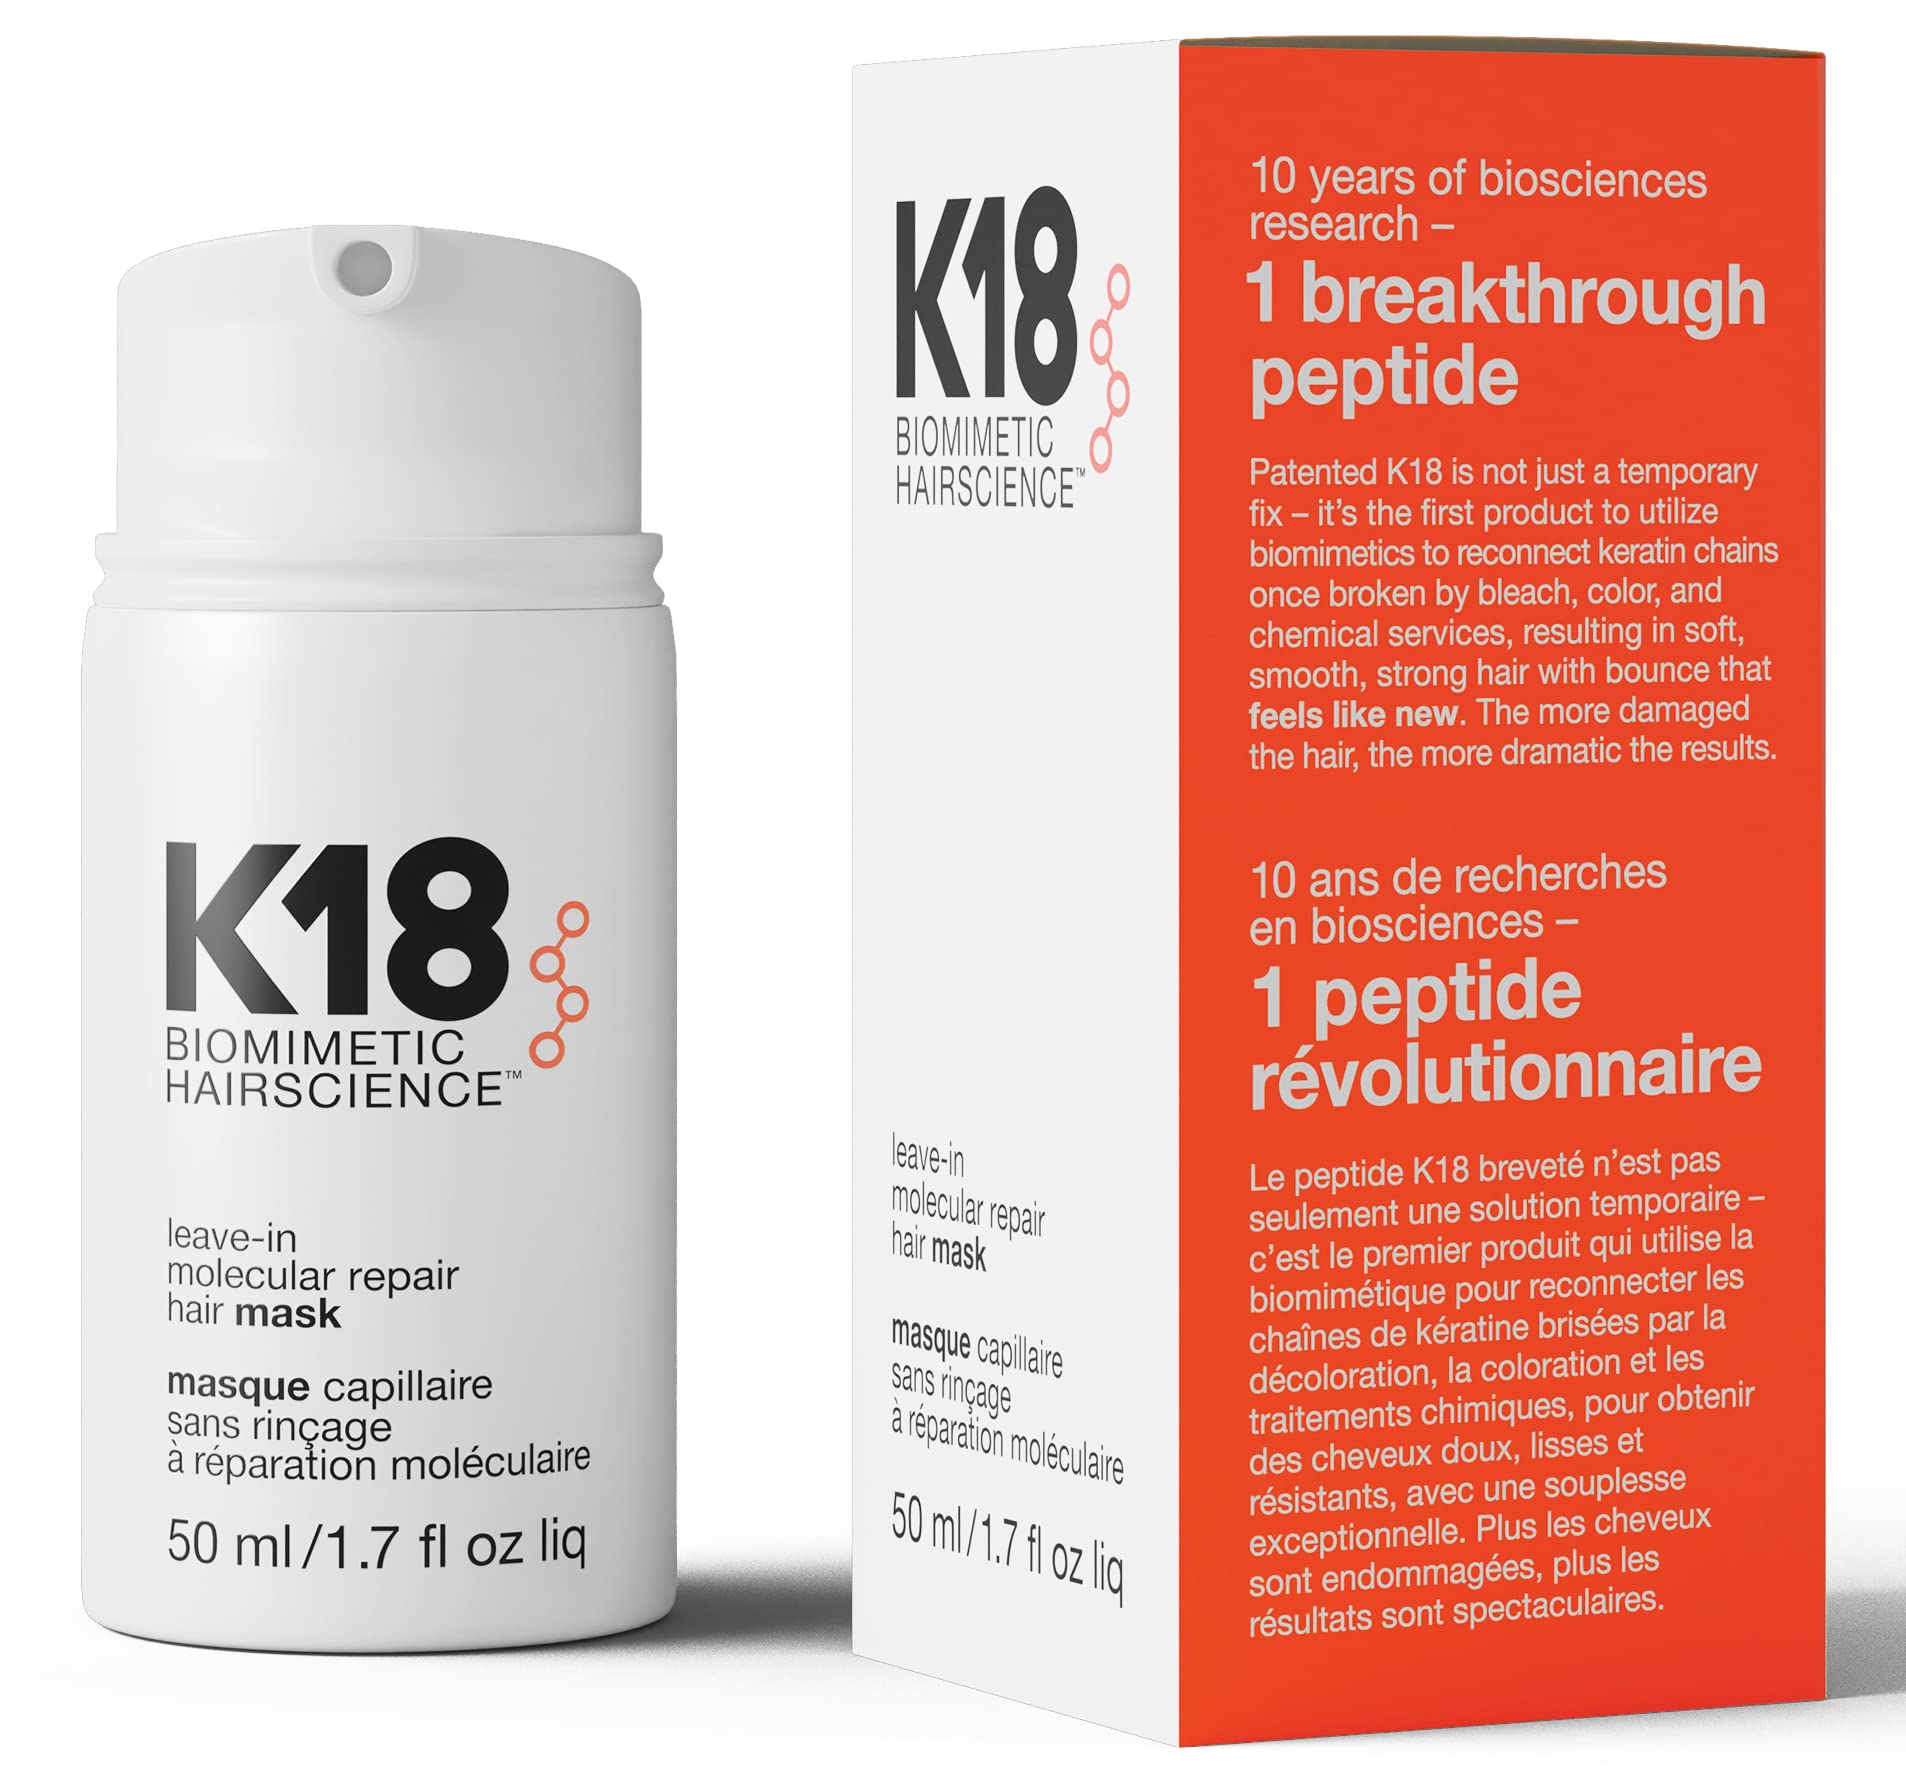 K18 免洗修复发膜护理可修复干燥或受损的头发 - 4 分钟即可逆转漂白剂、染发剂、化学服务和热造成的头发损伤...